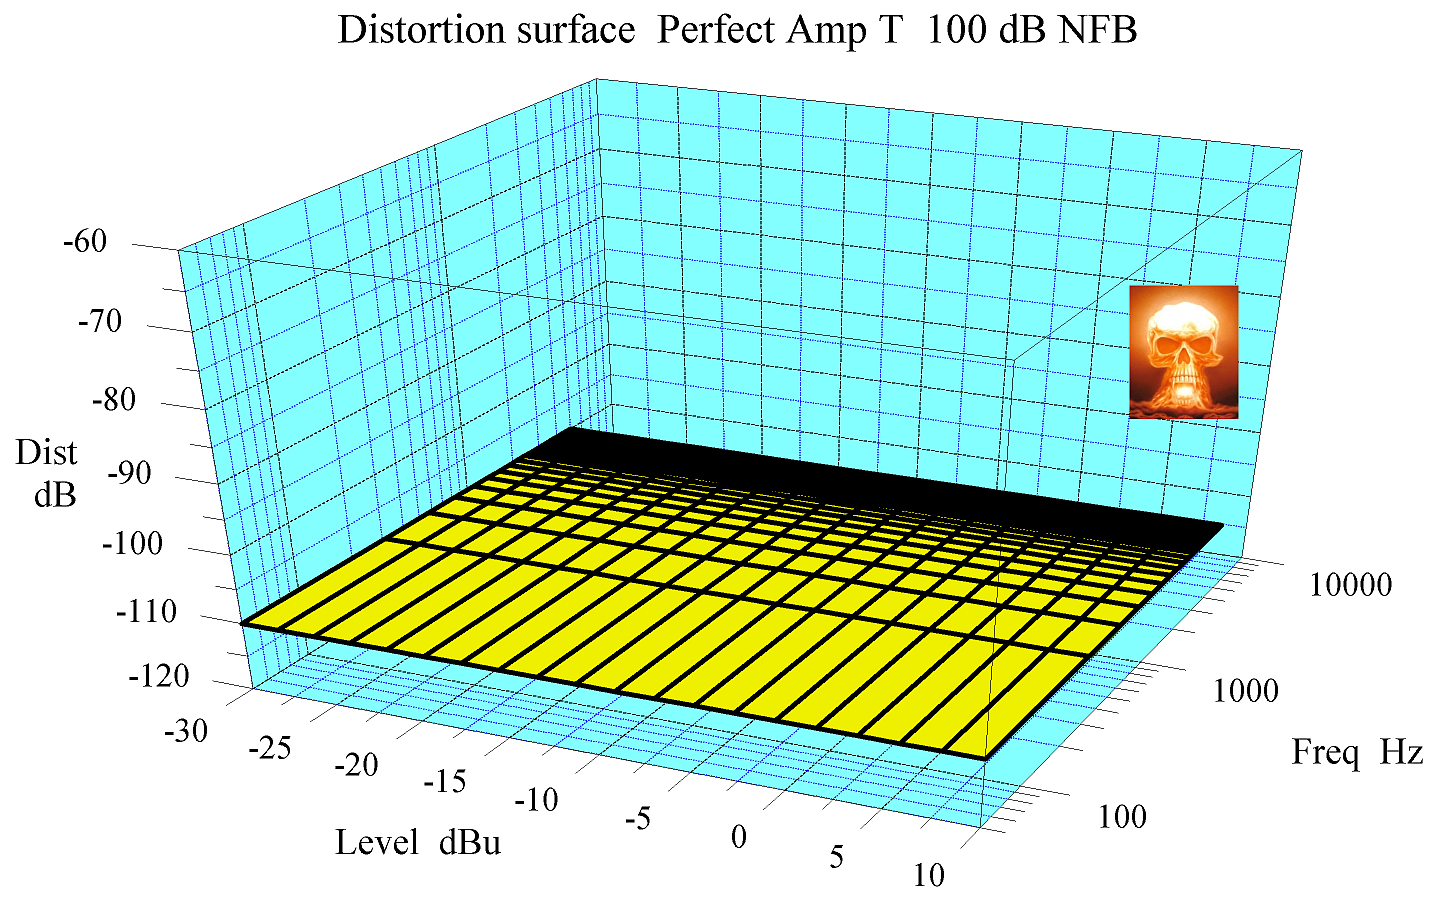 Distortion surface perfect amp T 100 dB NFB wm adj.png